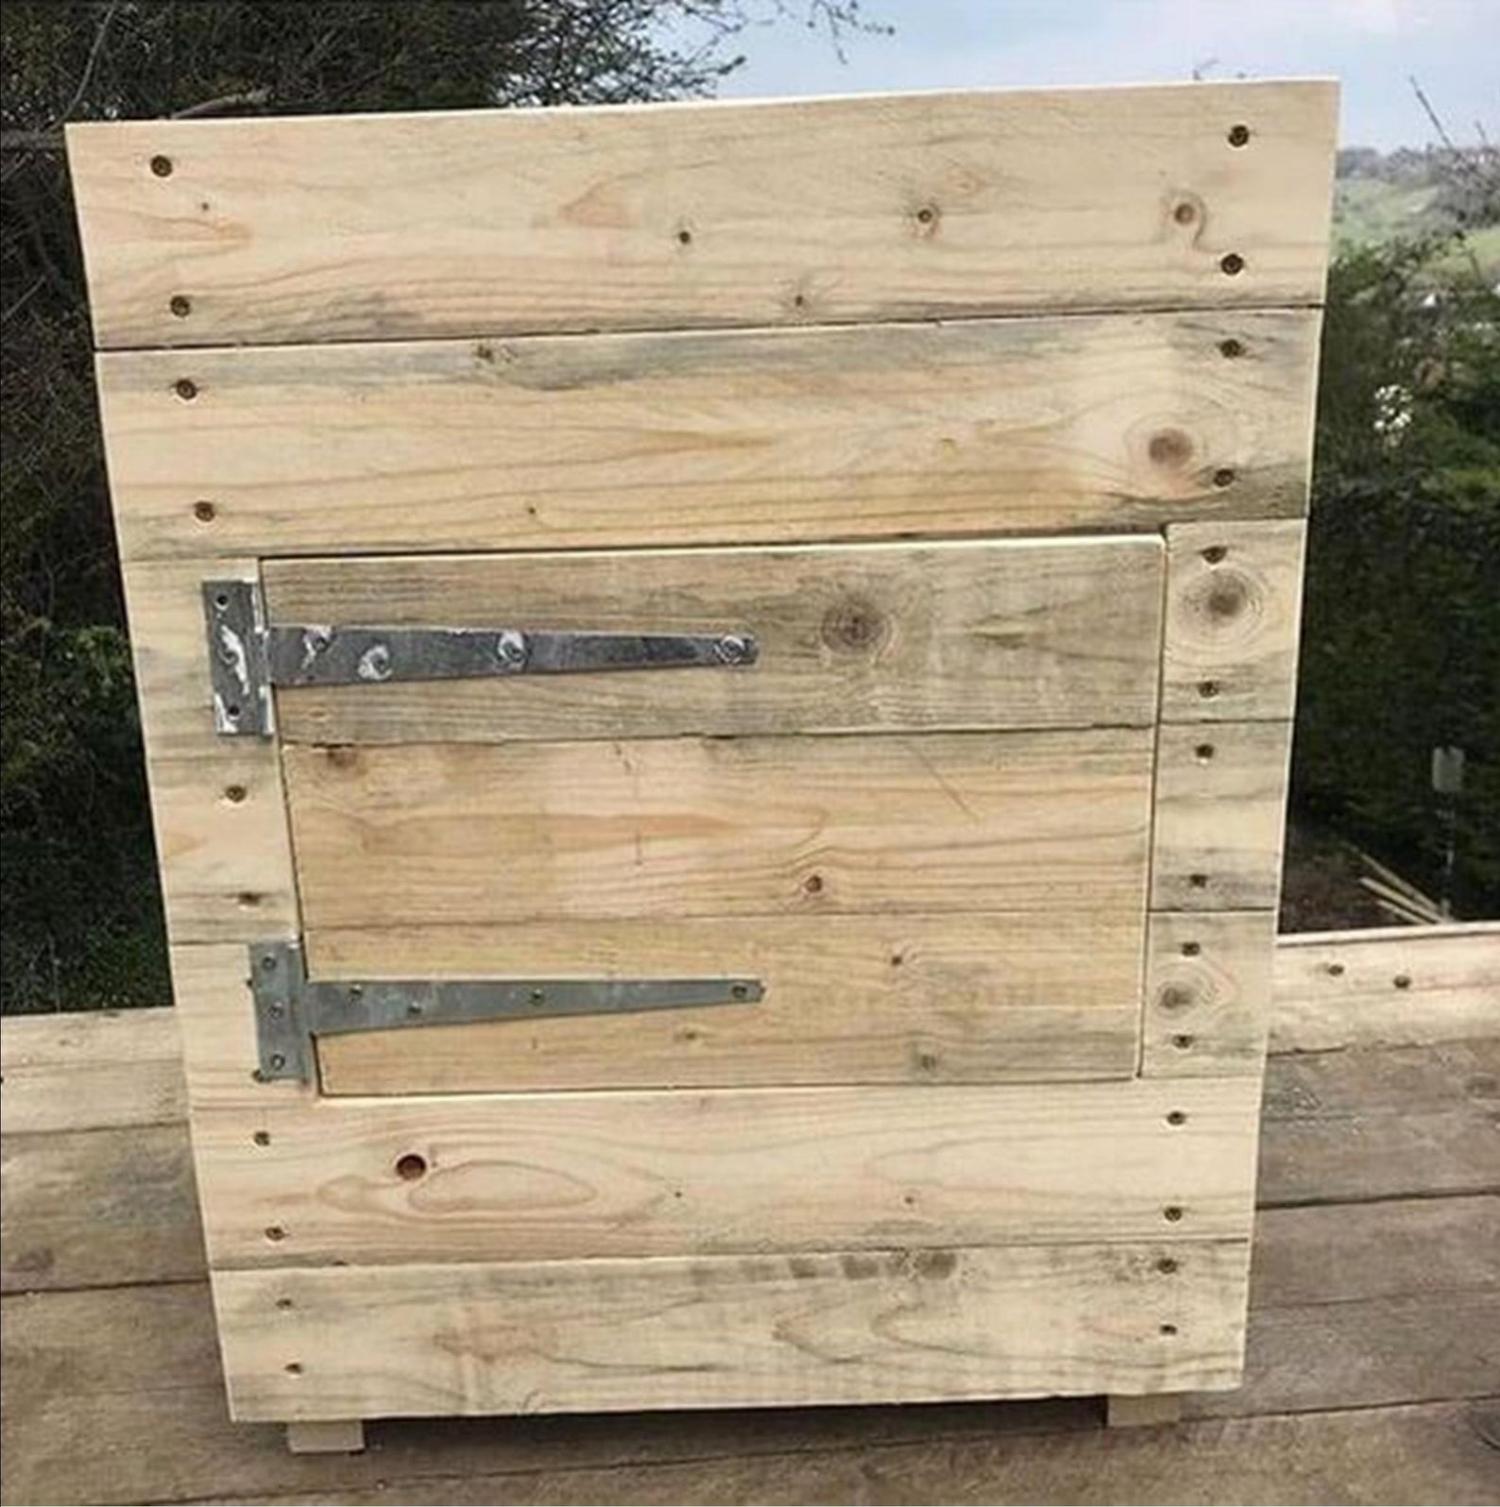 Wooden Potato Planter With a Door - DIY Wooden potato planter plans